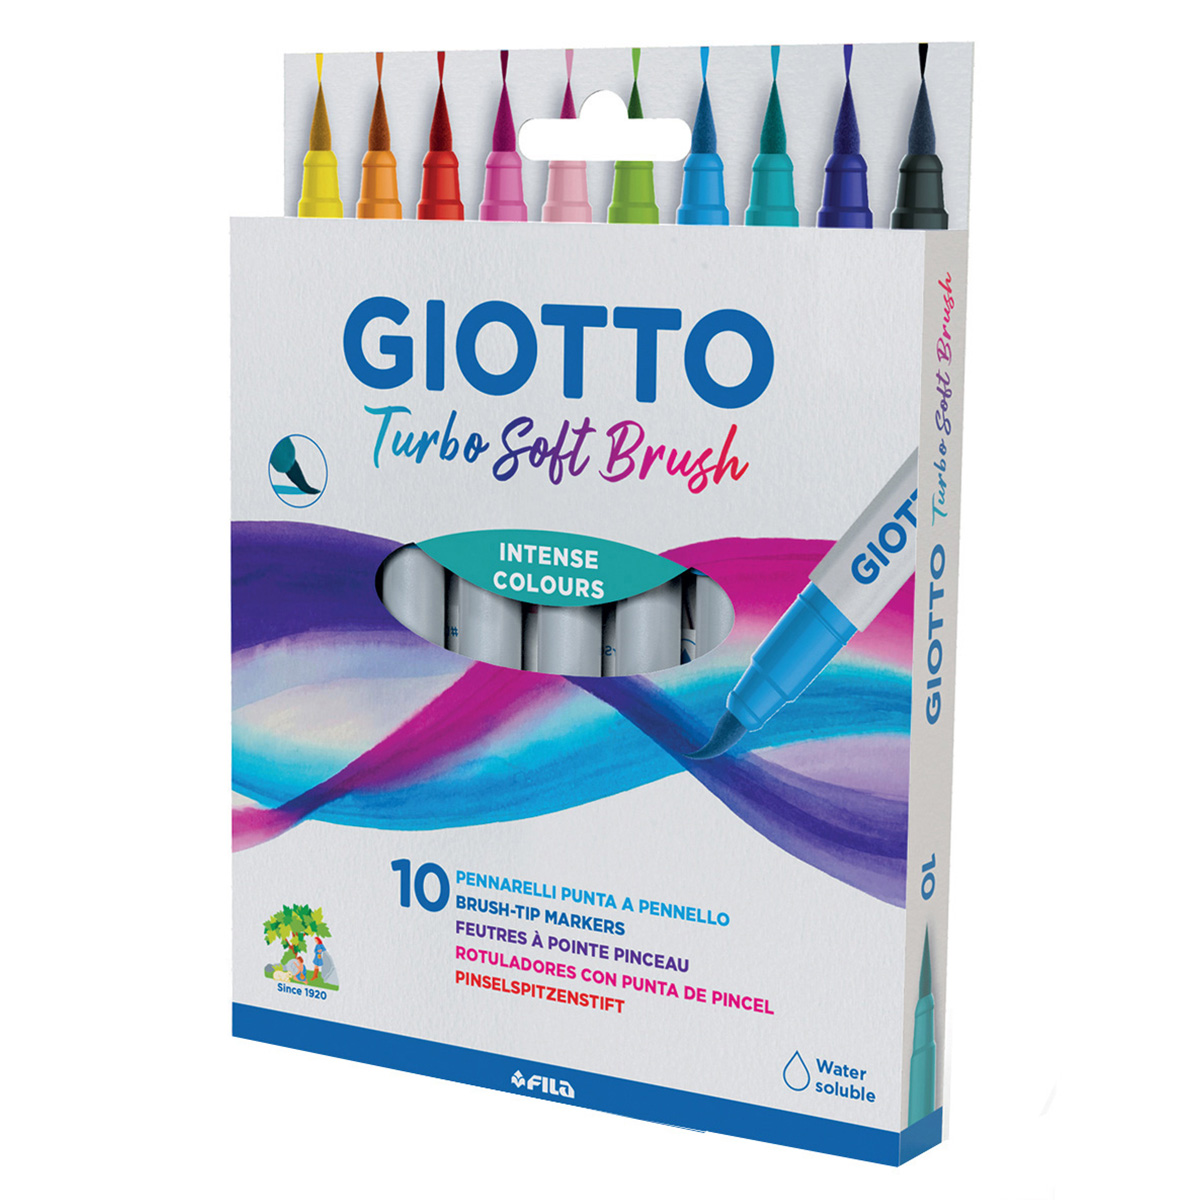 Giotto Be-bè Crayons de couleur - Lot de 10